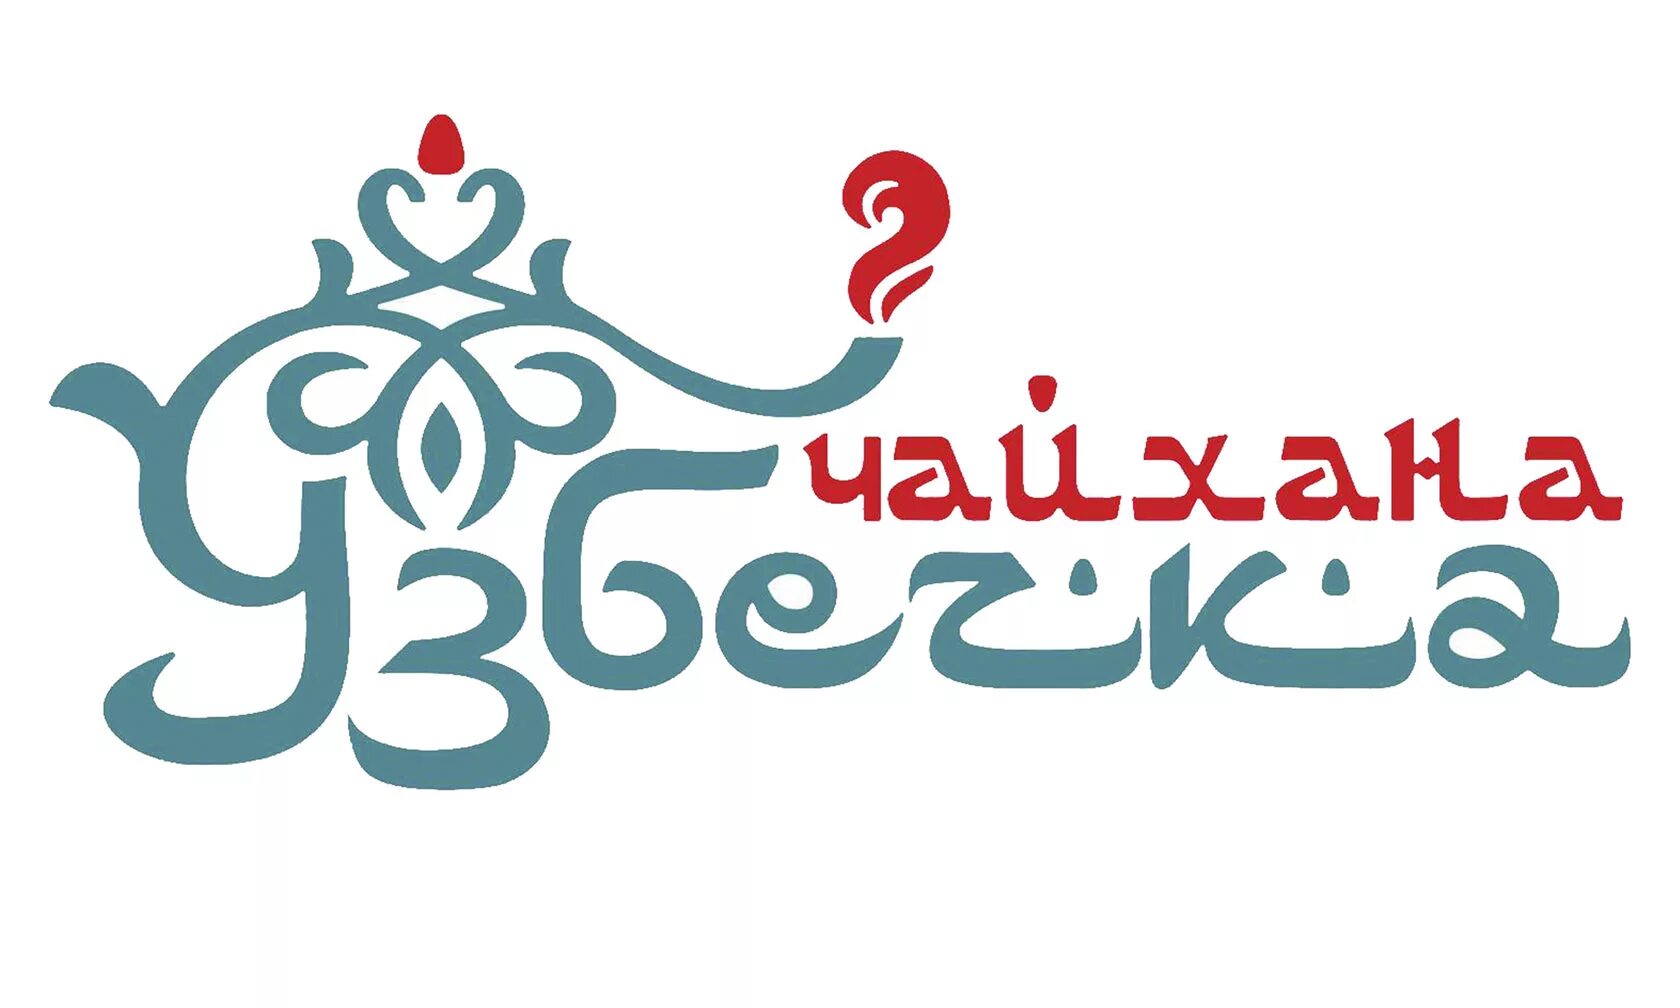 Чайхана исфар. Чайхана логотип. Логотип узбекской кухни. Логотип восточного ресторана. Чайхана вывеска.